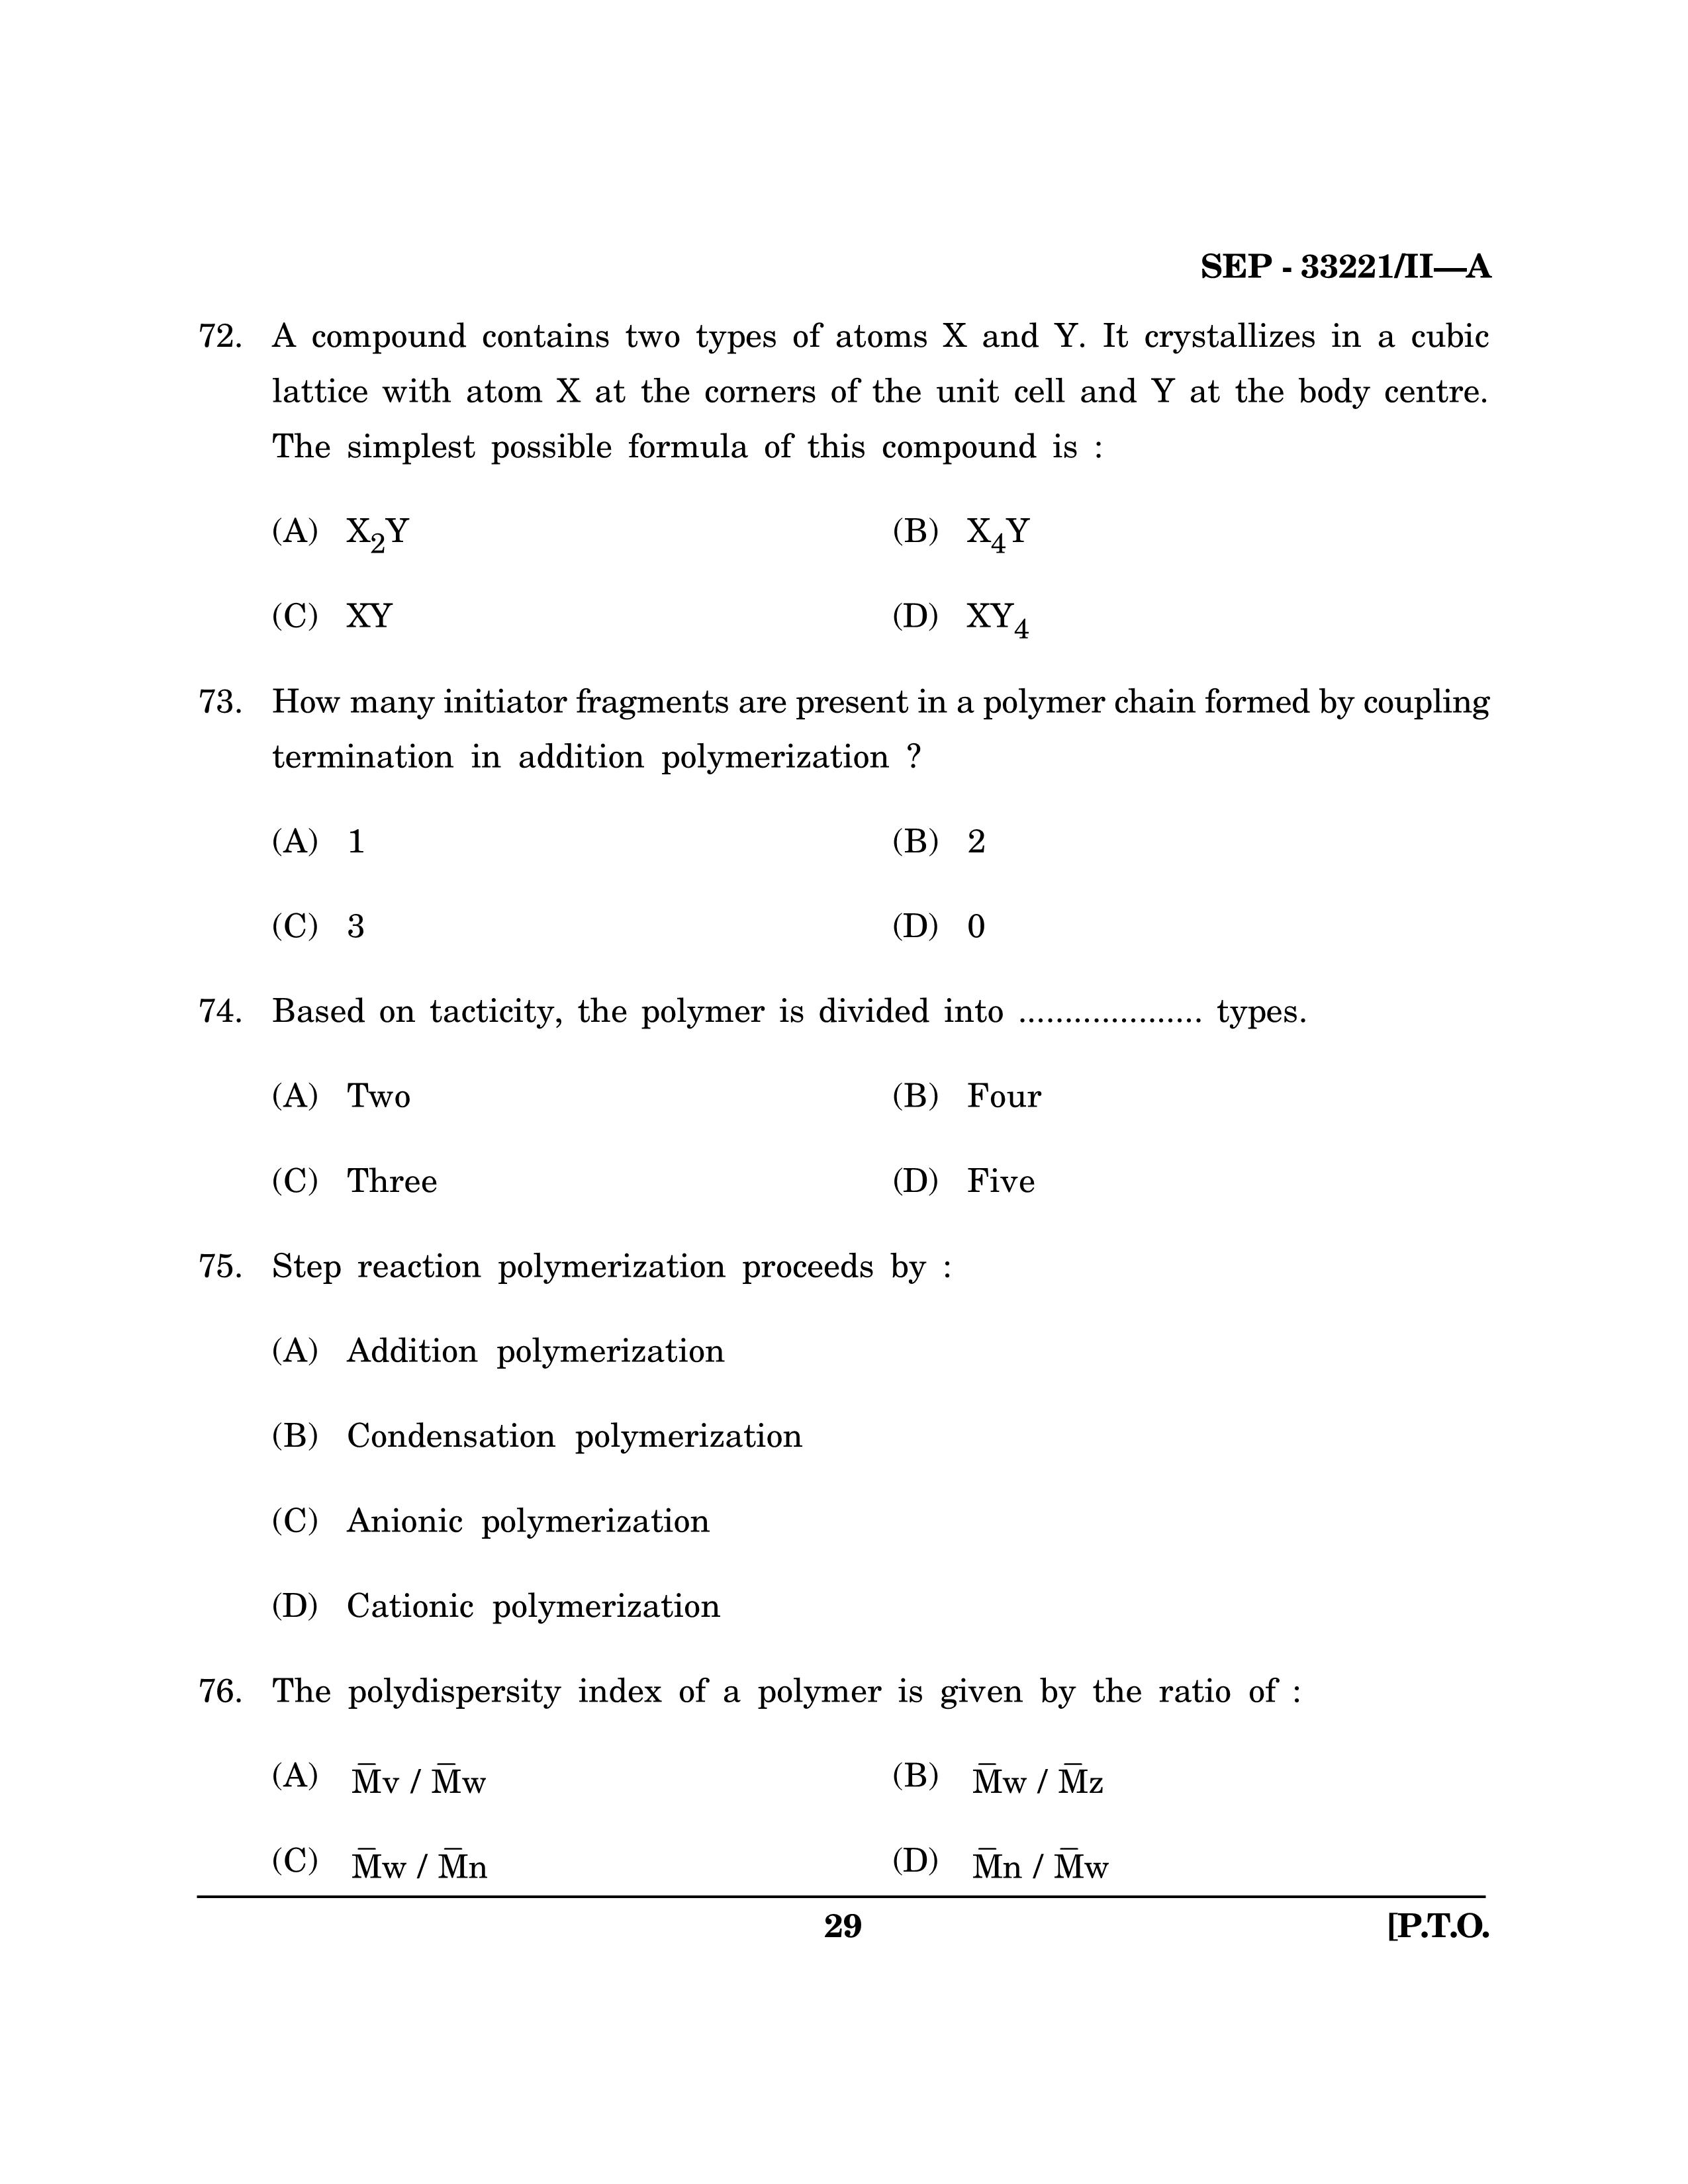 Maharashtra SET Chemical Sciences Exam Question Paper September 2021 28